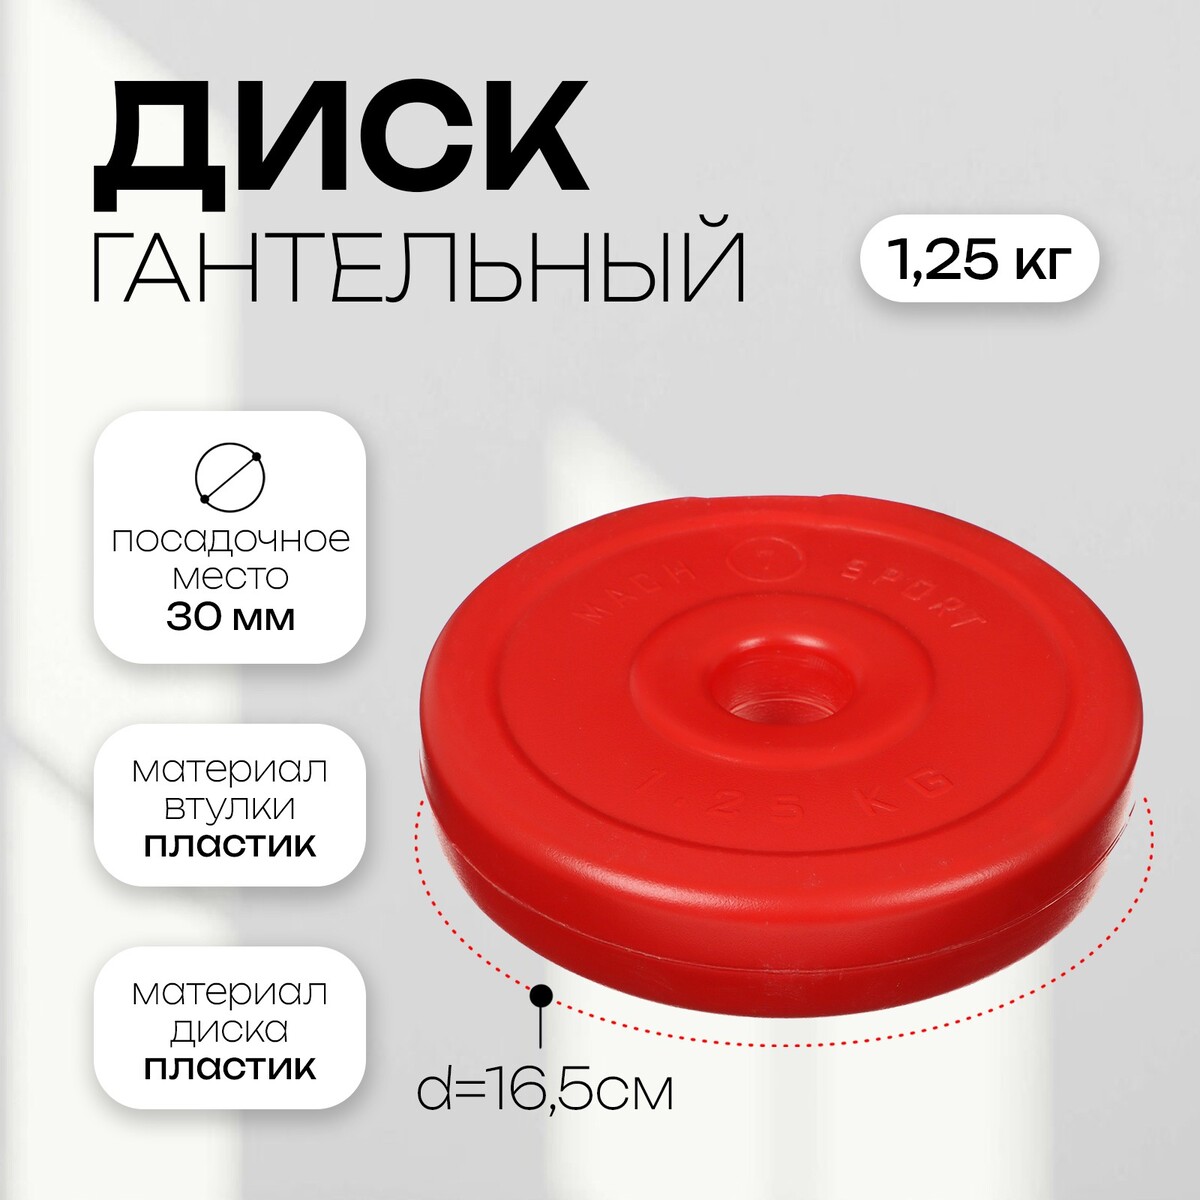 Диск гантельный 1,25 кг, d=30 мм, цвет красный диск d51 мм johns 25 кг dr71022 25с красный